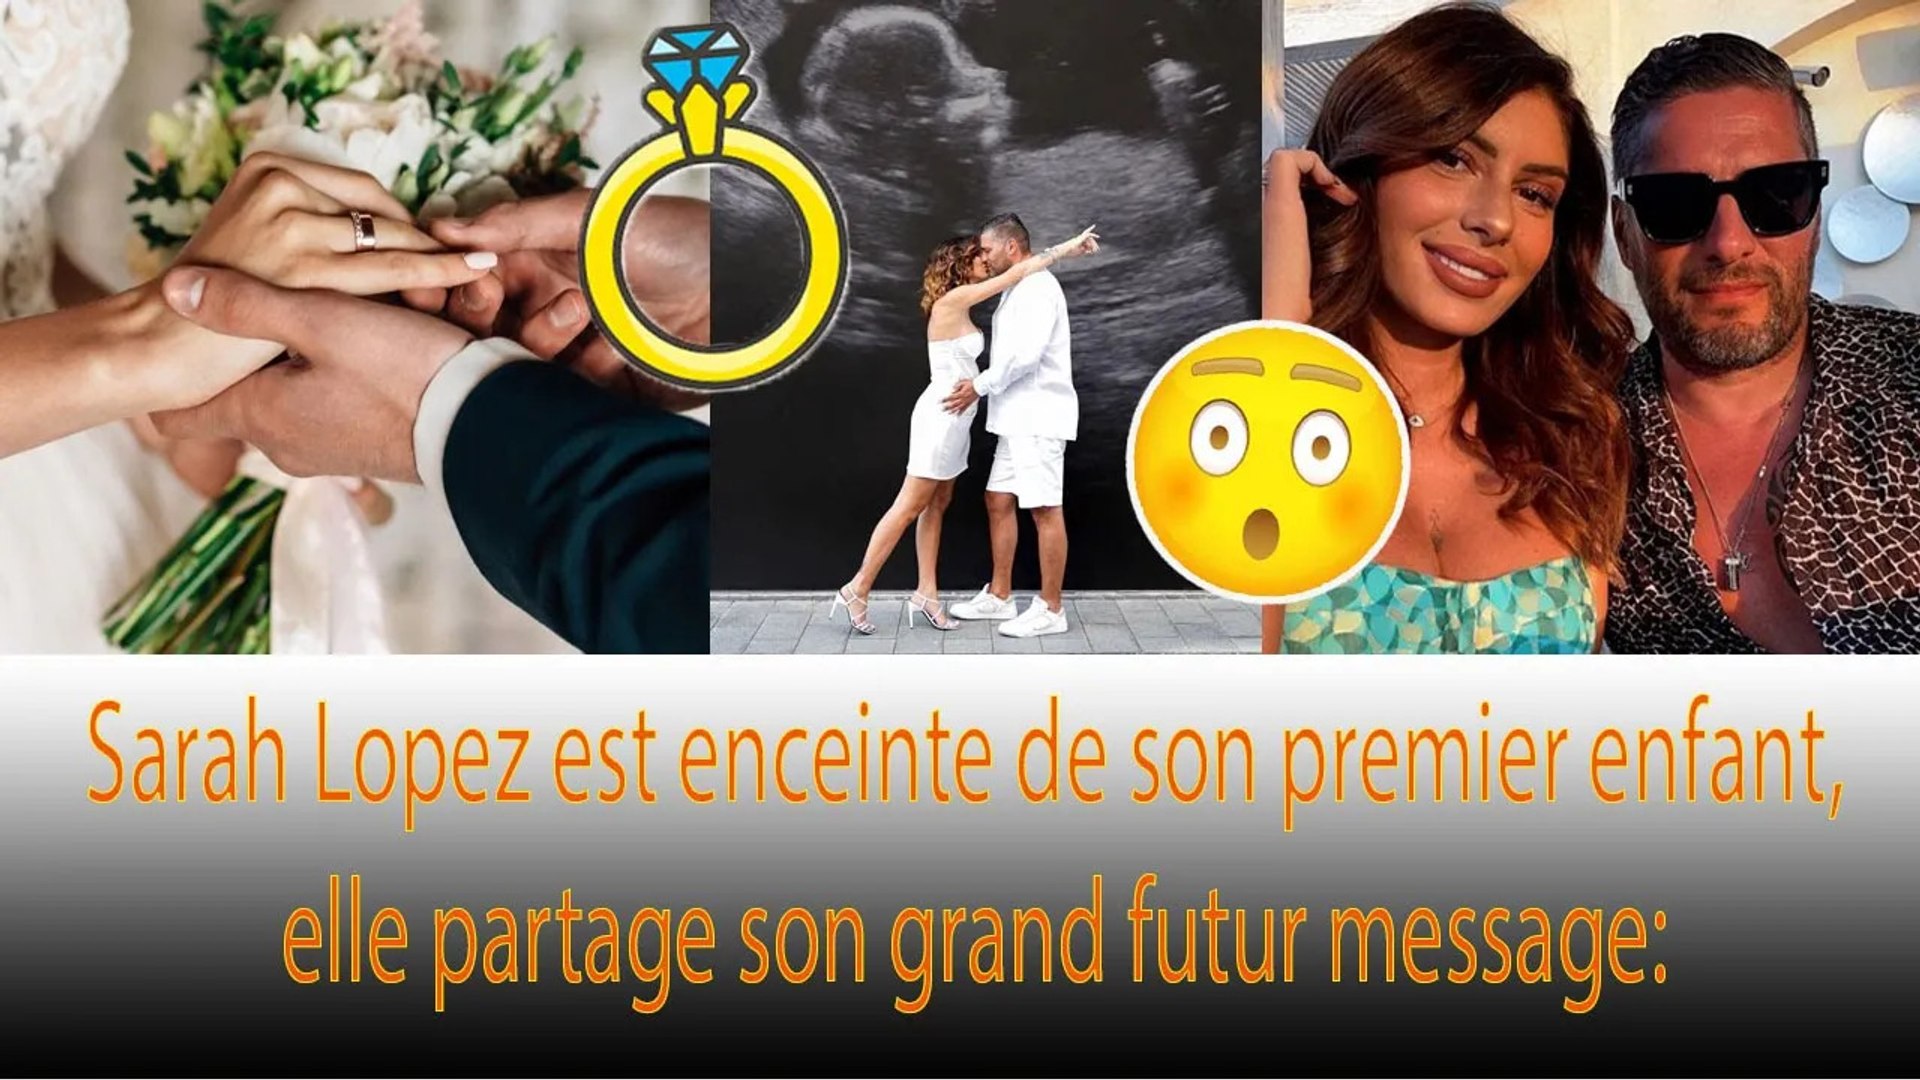 Sarah Lopez : bébé et maintenant le mariage, elle fait une grande annonce  ❗❗ - video Dailymotion